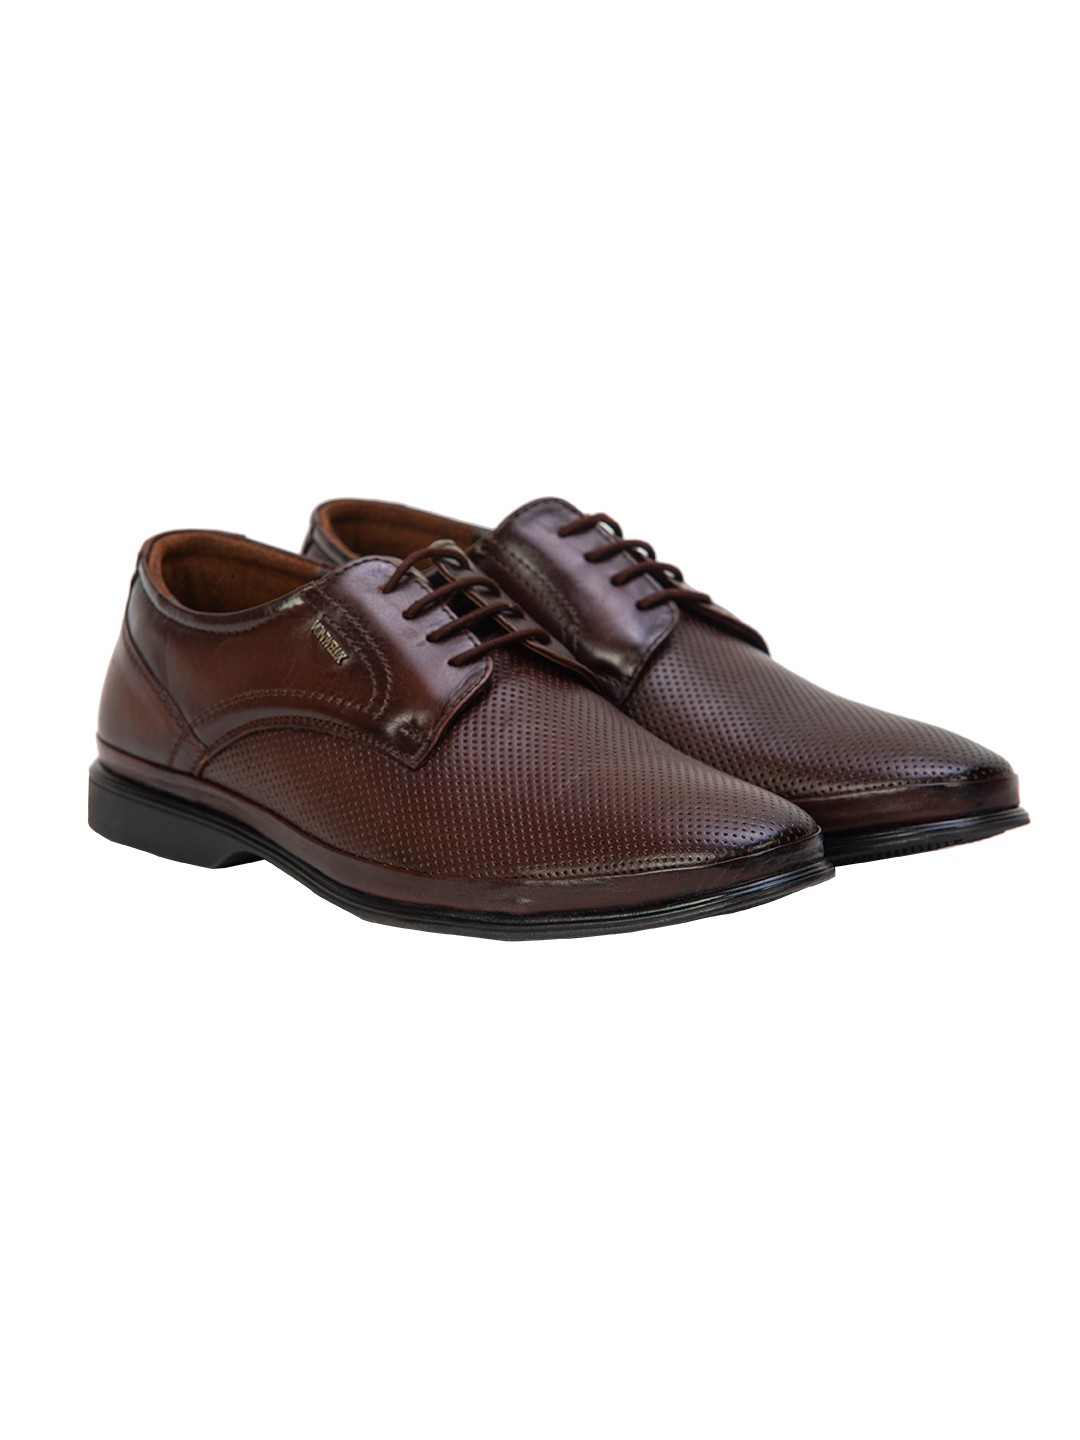 Buy Von Wellx Germany Comfort Coen Brown Shoes Online in Maharashtra